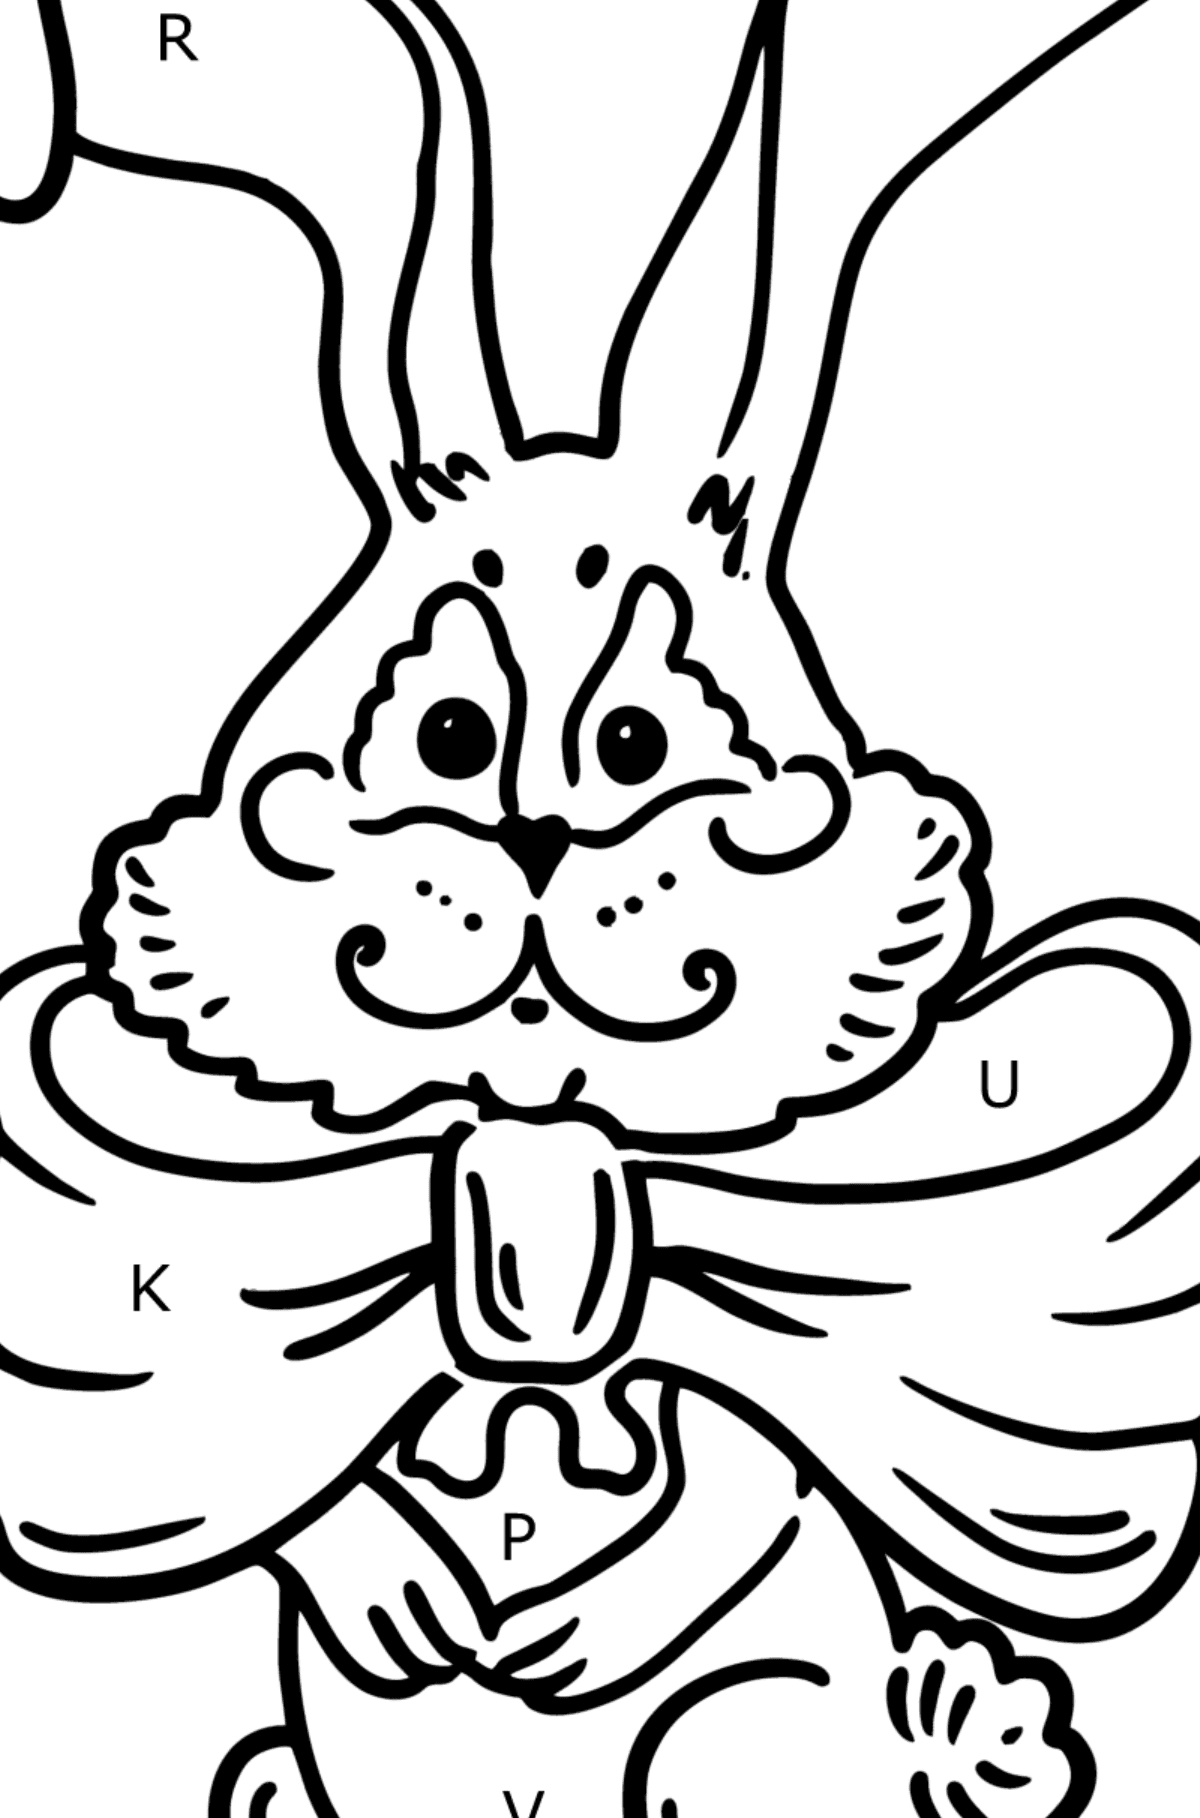 Kleurplaat konijntje met een strik - Kleuren met letters voor kinderen